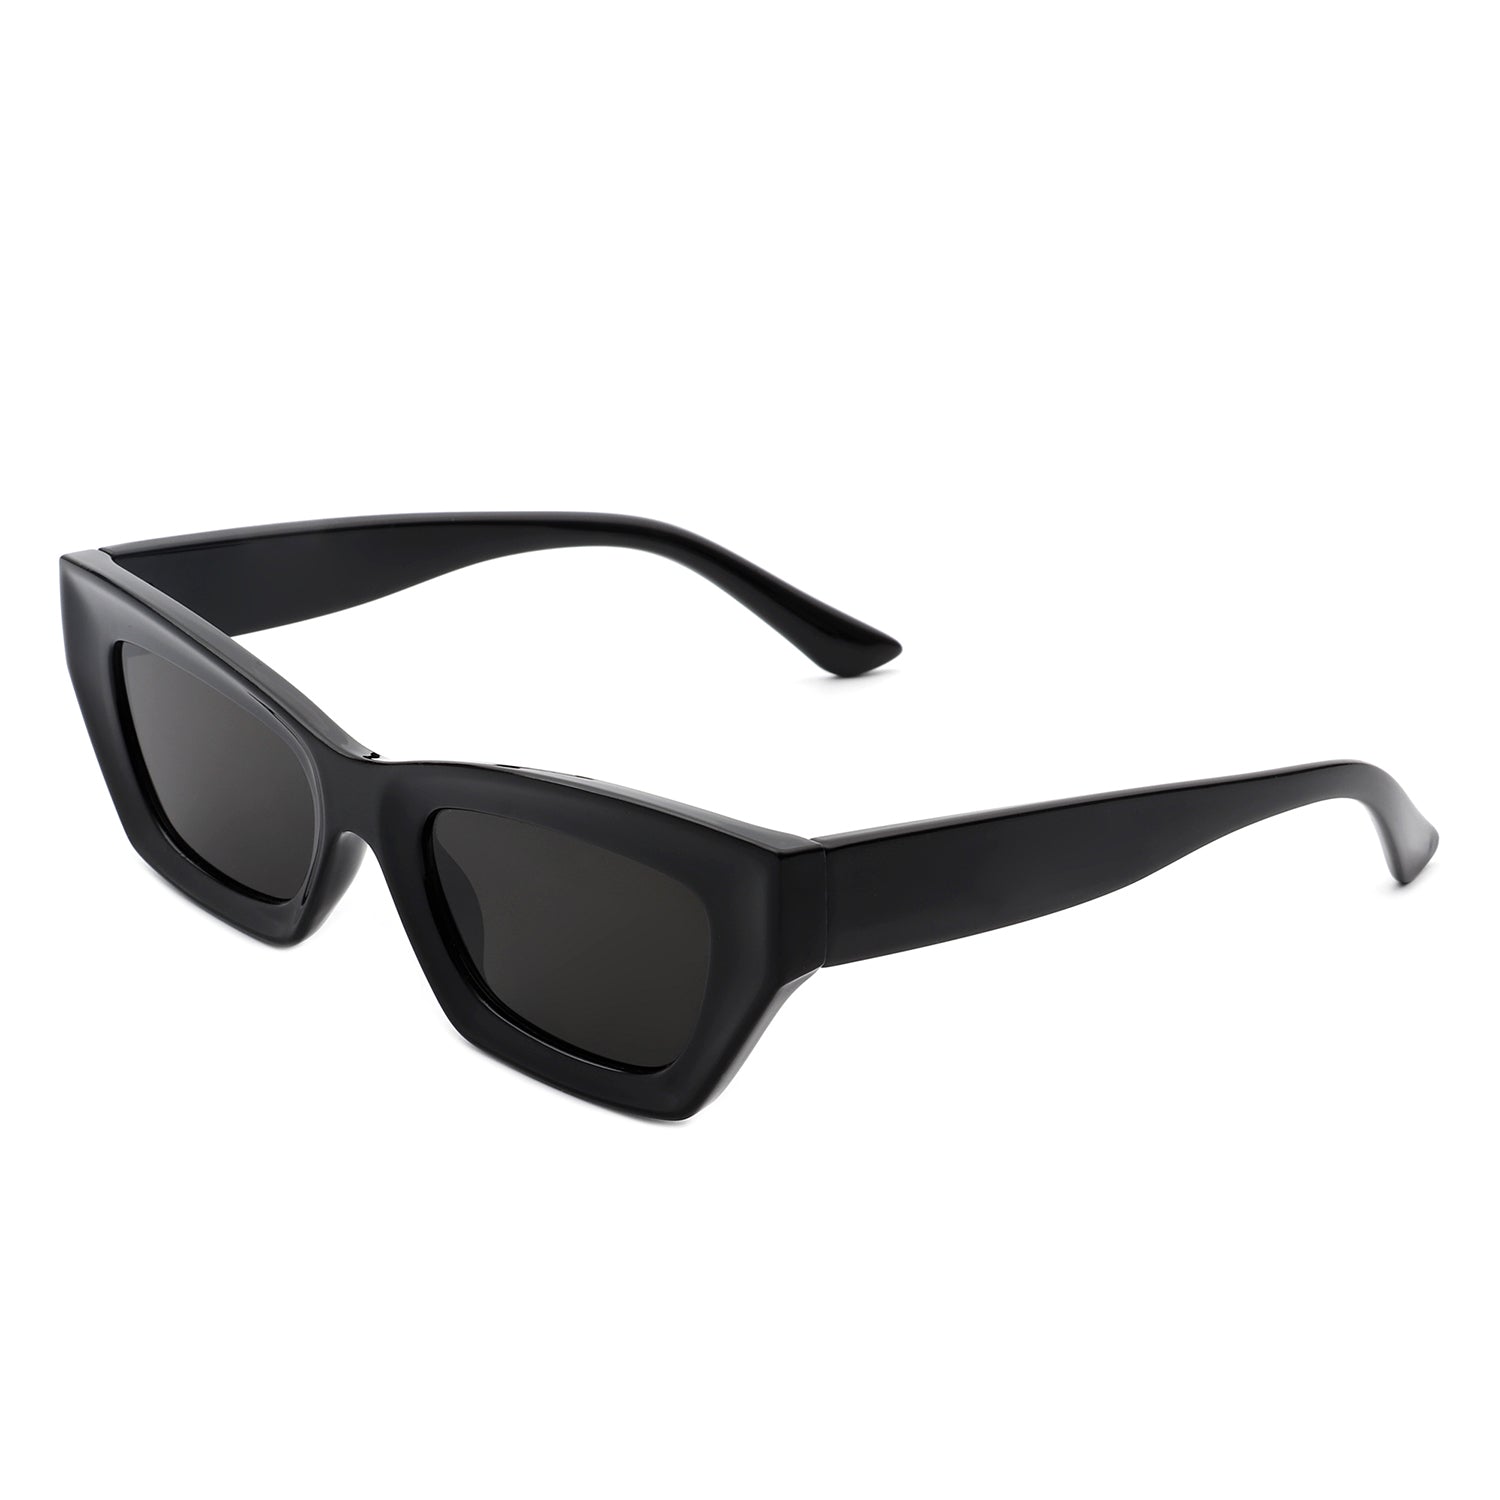 Chanel 2018 Rectangle Gradient Sunglasses - Black Sunglasses, Accessories -  CHA301805